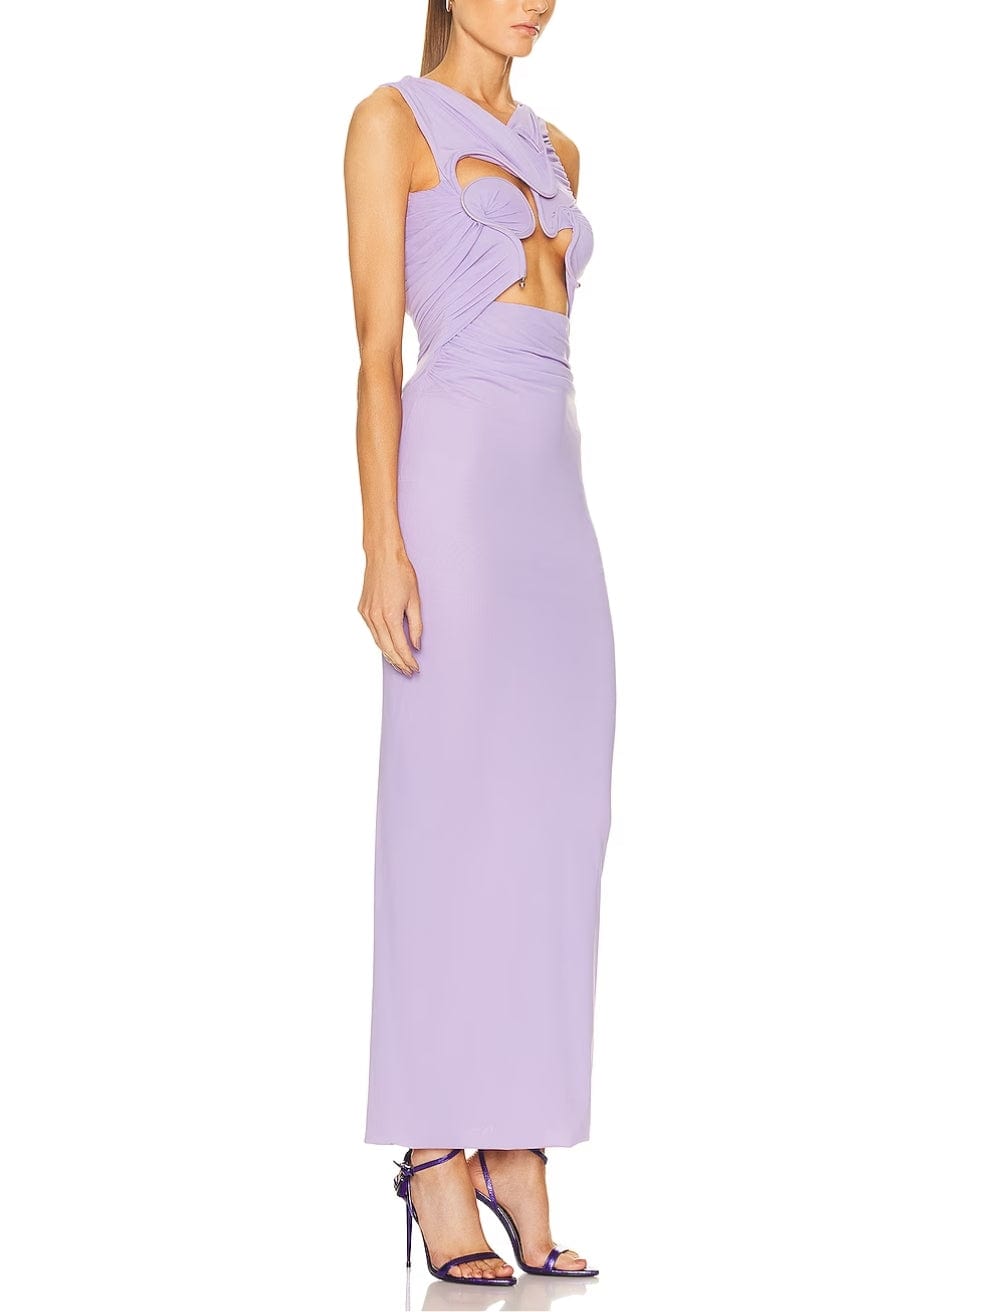 Venus Tank Dress in Lilac